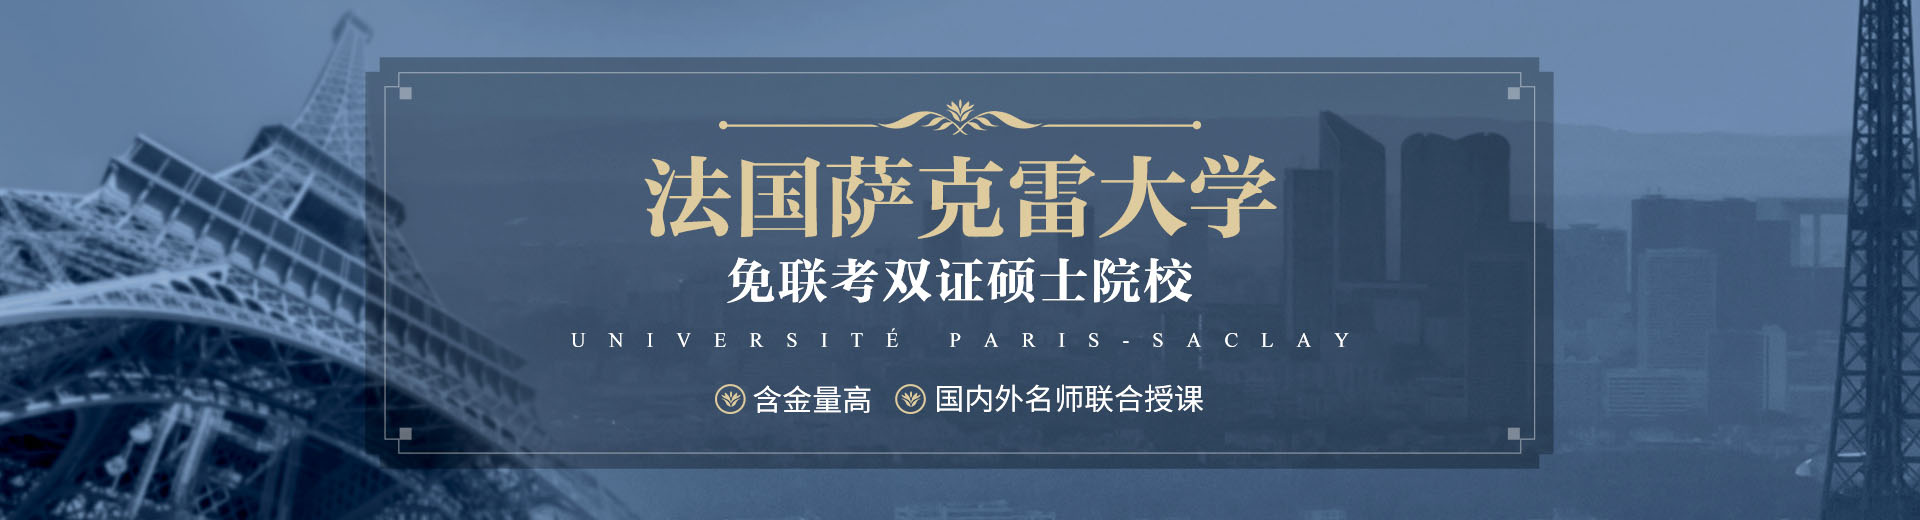 北京巴黎萨克雷大学